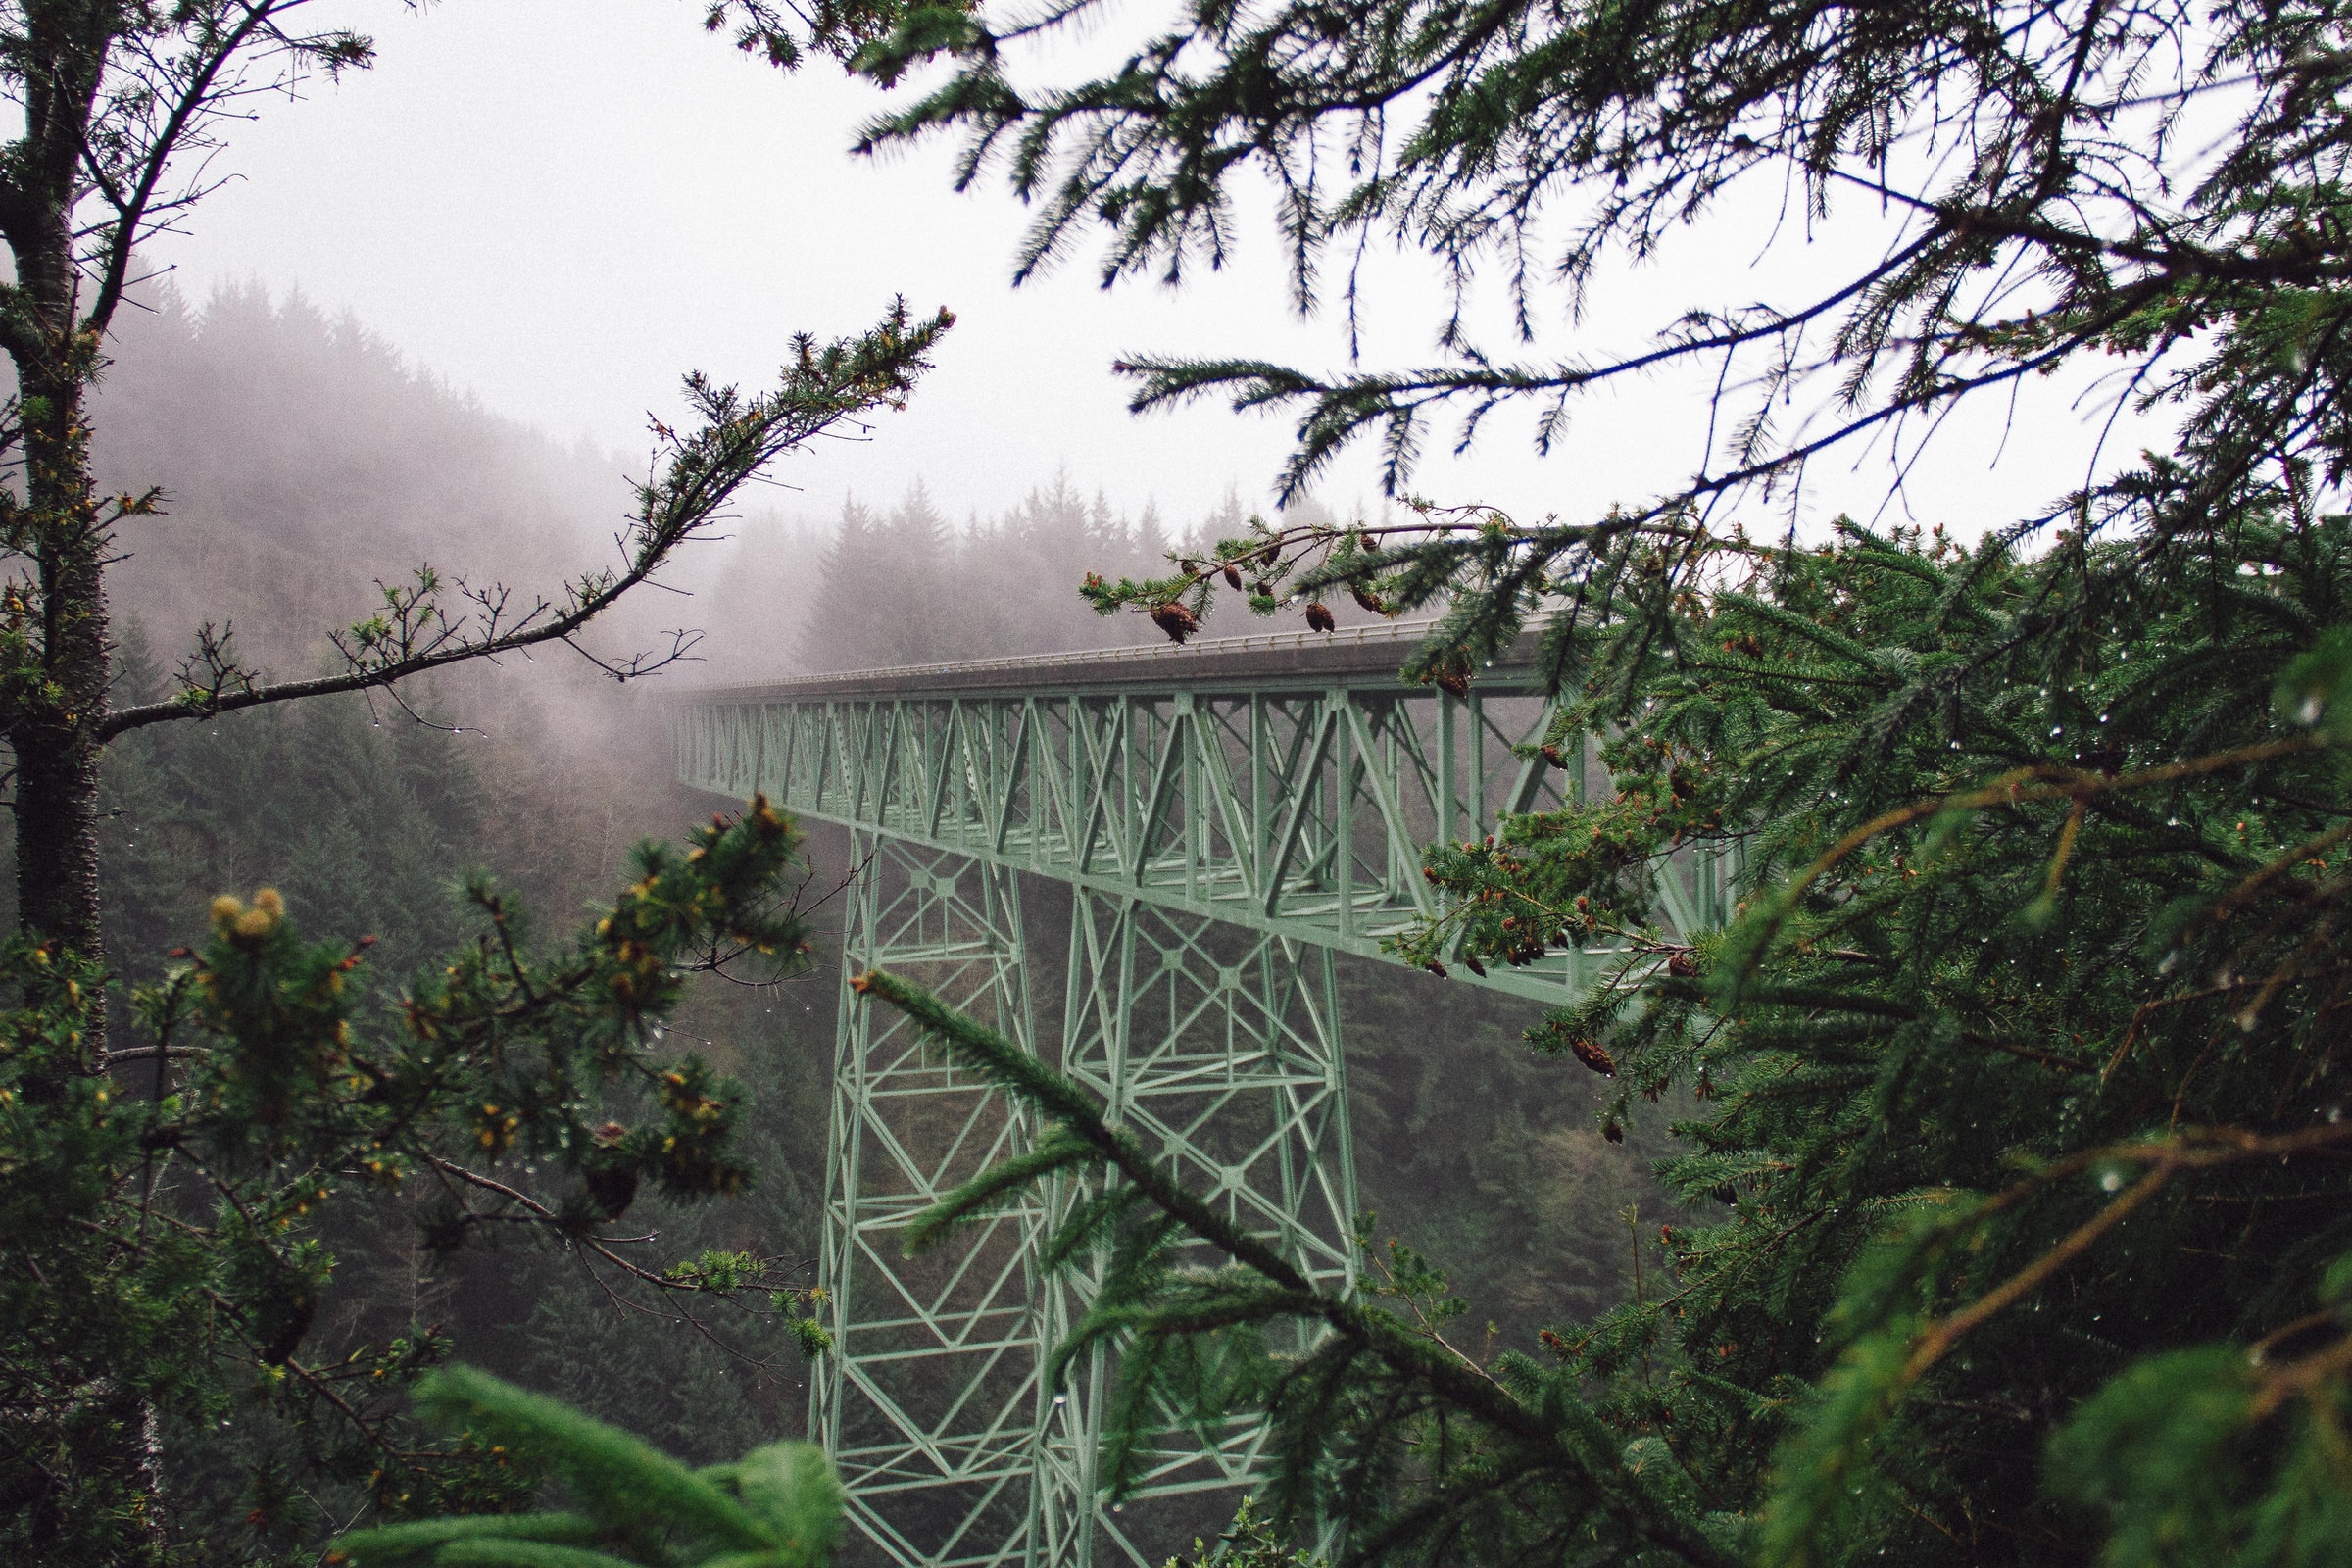 General 2400x1600 photography nature plants forest landscape mist bridge green